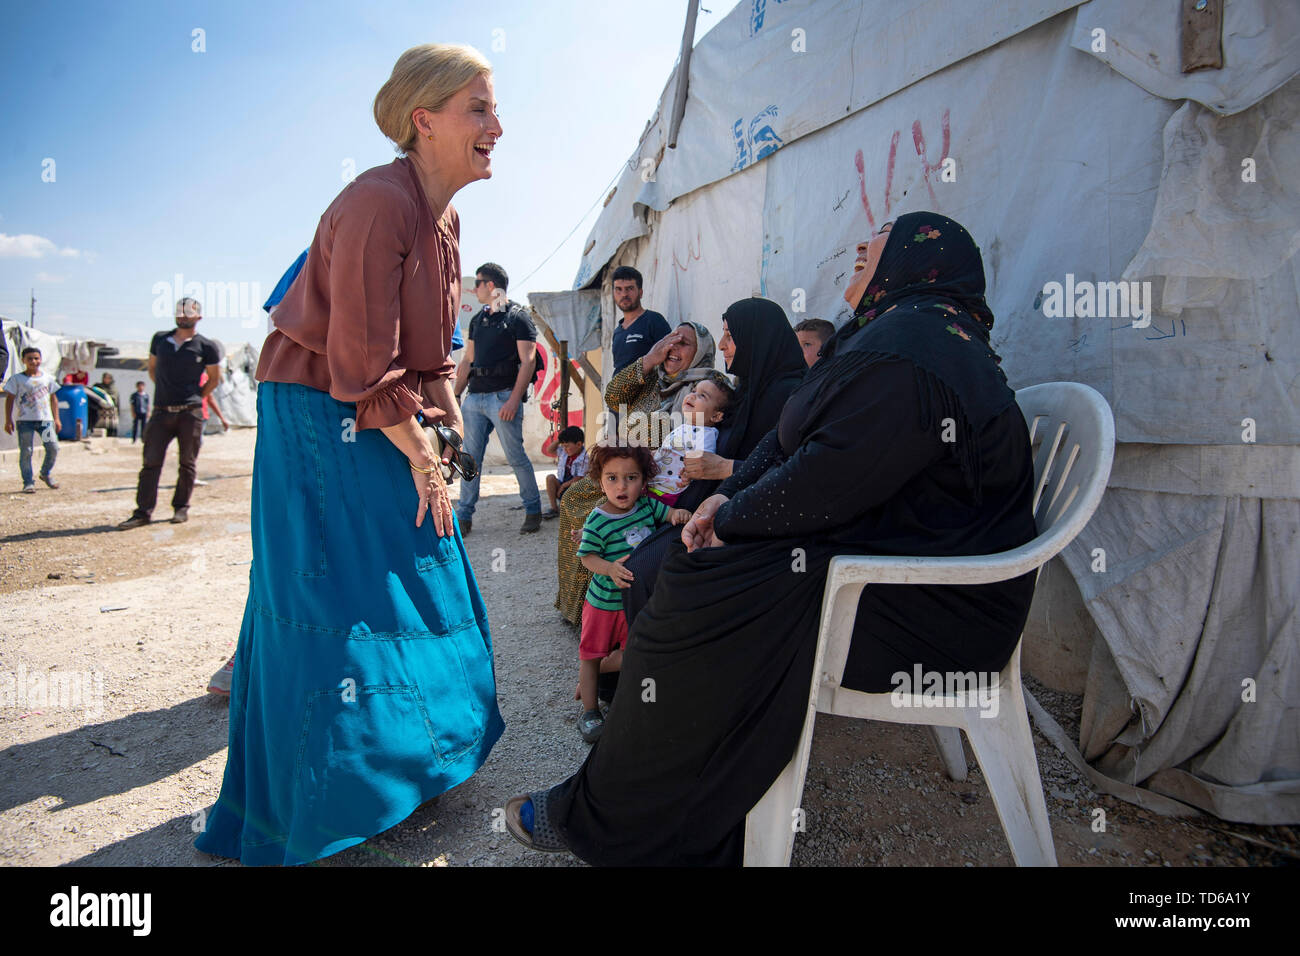 La Contessa di Wessex incontra donne siriano, compresi i profughi in Libano dal conflitto siriano, in occasione di una visita ad un informale tented insediamento nella valle della Bekaa, Libano, durante il primo ufficiale di Royal visita al paese. Foto Stock